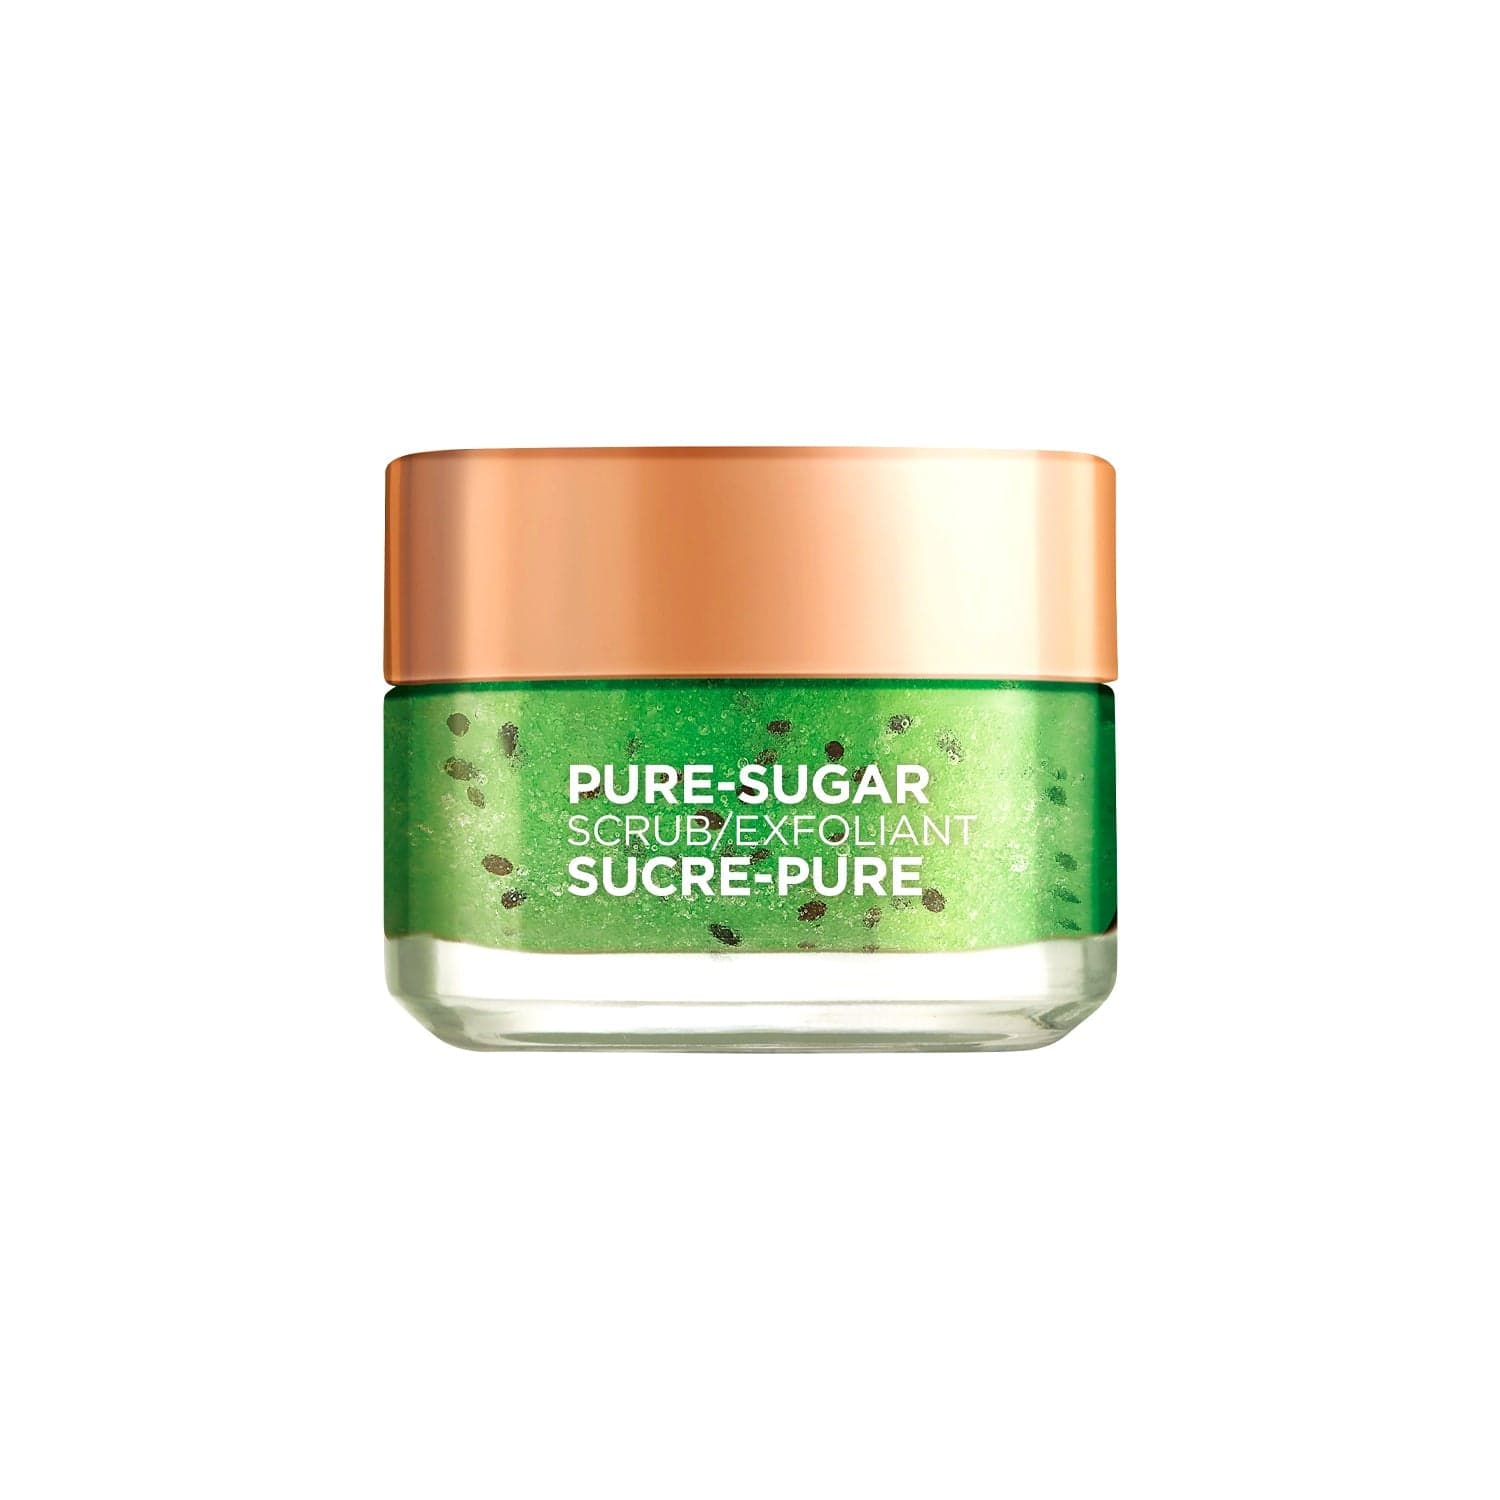 L'Oréal - "Clear Scrub" - Gommage Purifiant Aux Sucres De Soin 50ml - L'Oréal - Ethni Beauty Market